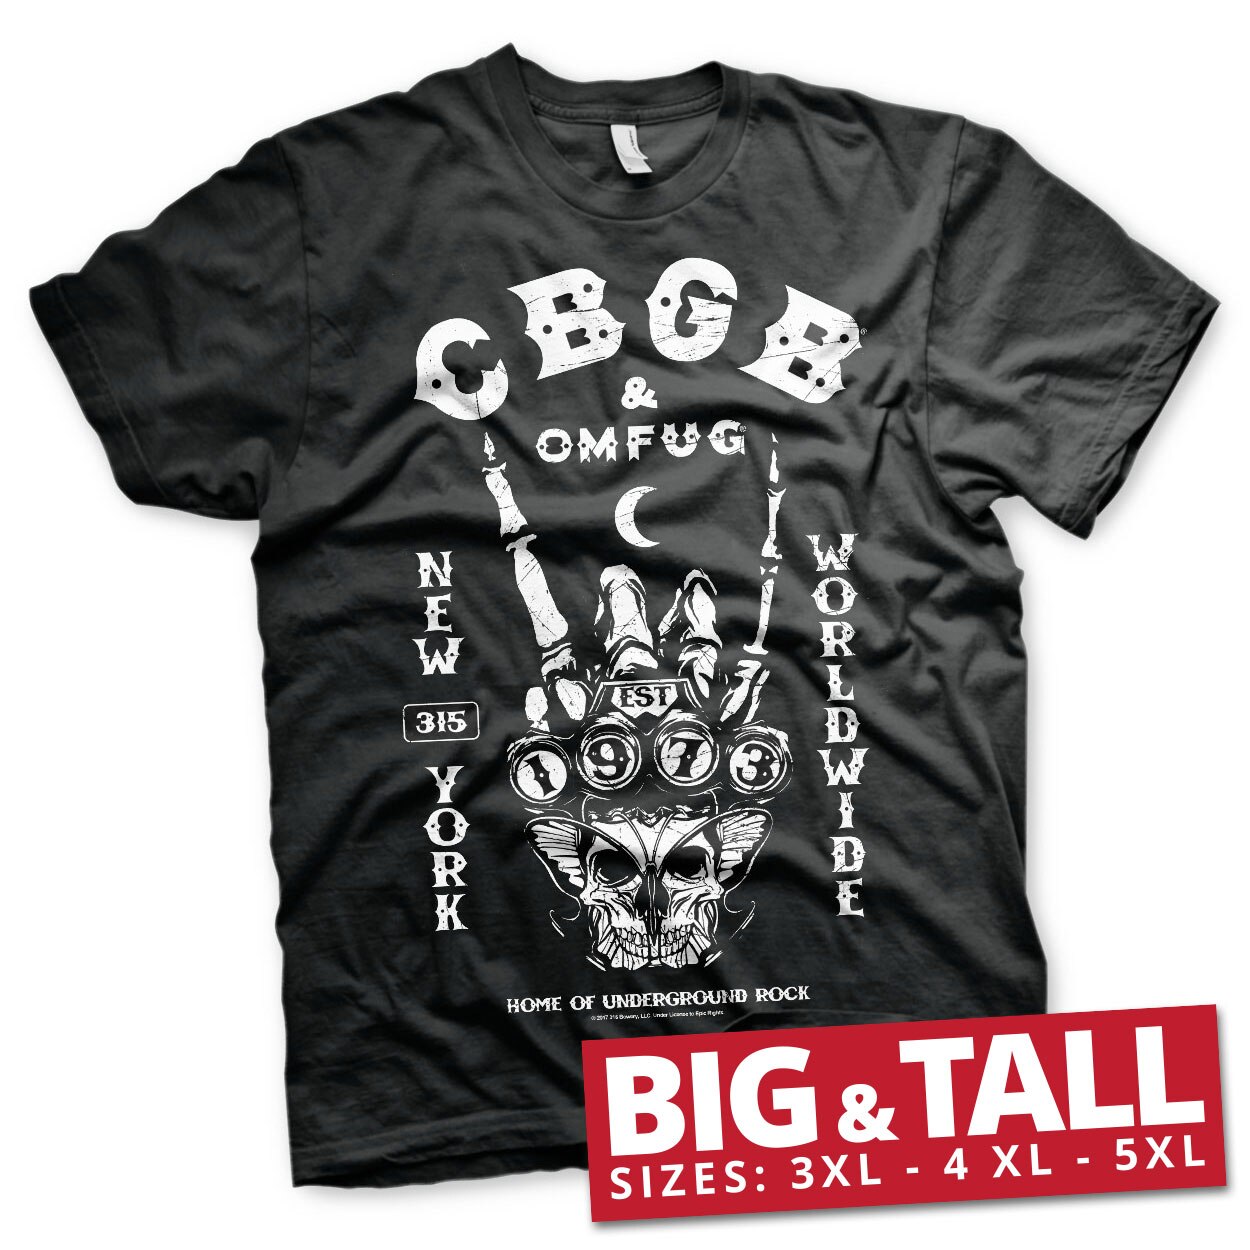 CBGB 315 New York Big & Tall T-Shirt